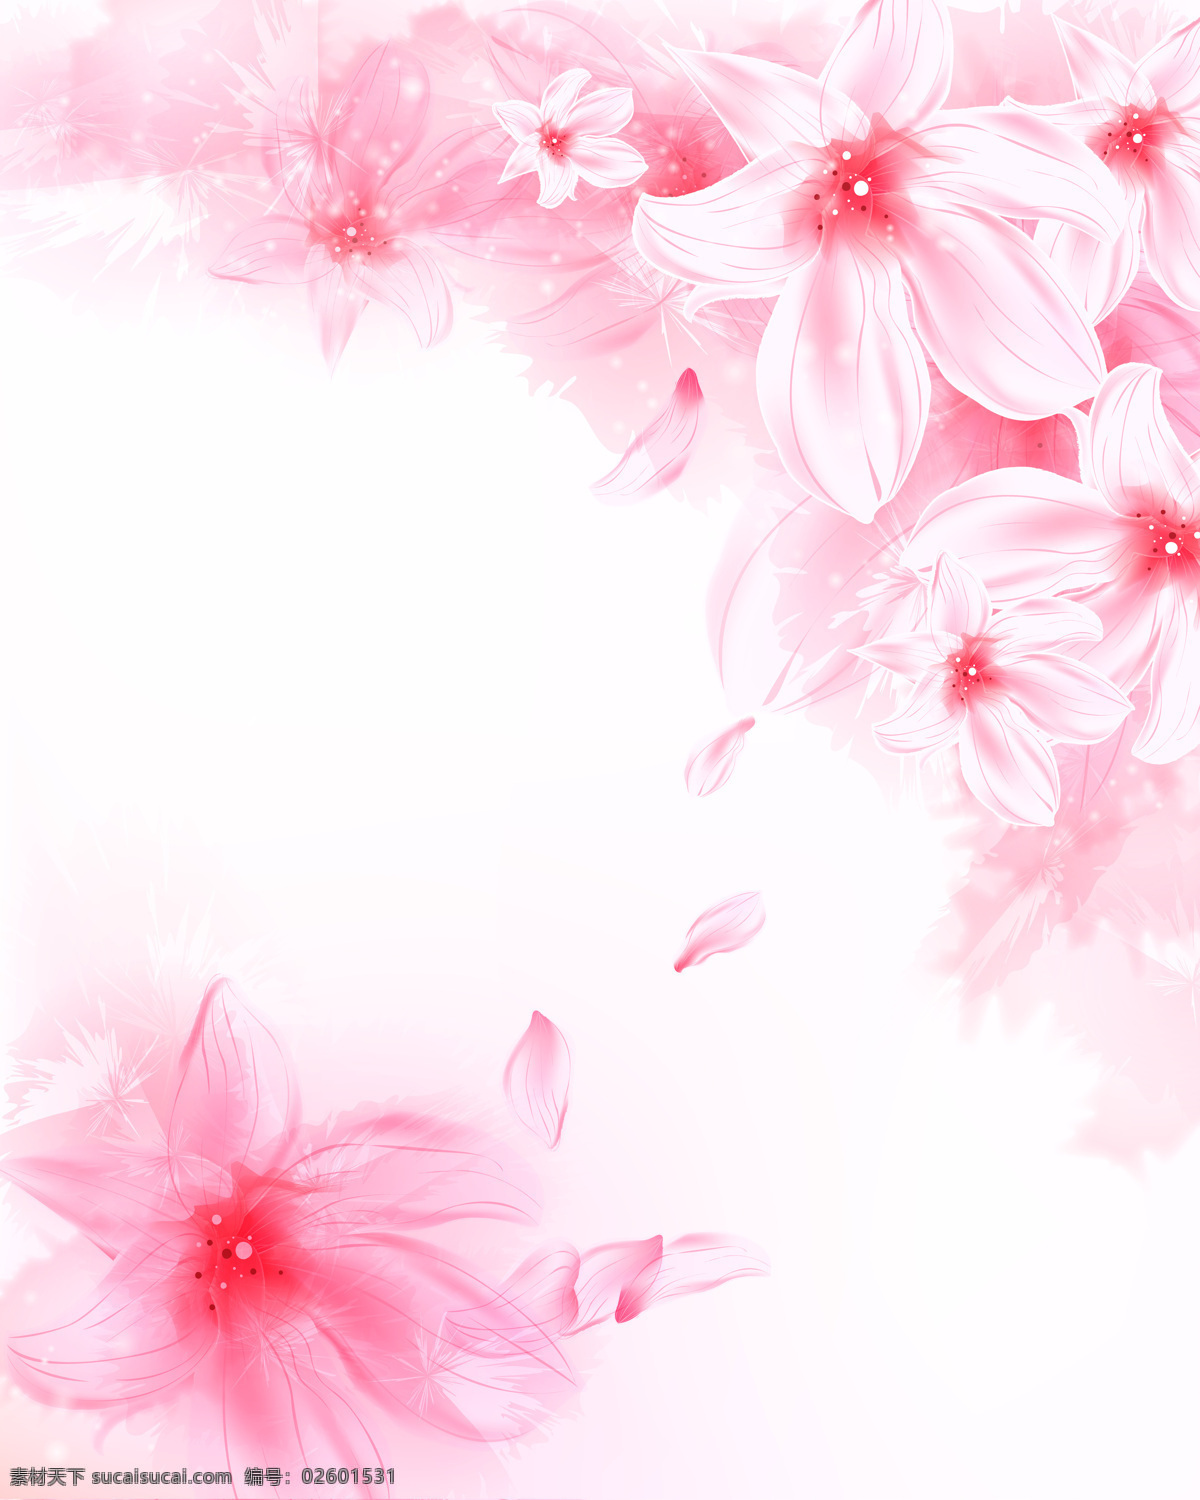 粉色花朵 粉色 花朵 花瓣 手绘花朵 百合 唯美 浪漫花朵 花朵背景 装饰图案 线条 移门 设计素材 移门图案 底纹边框